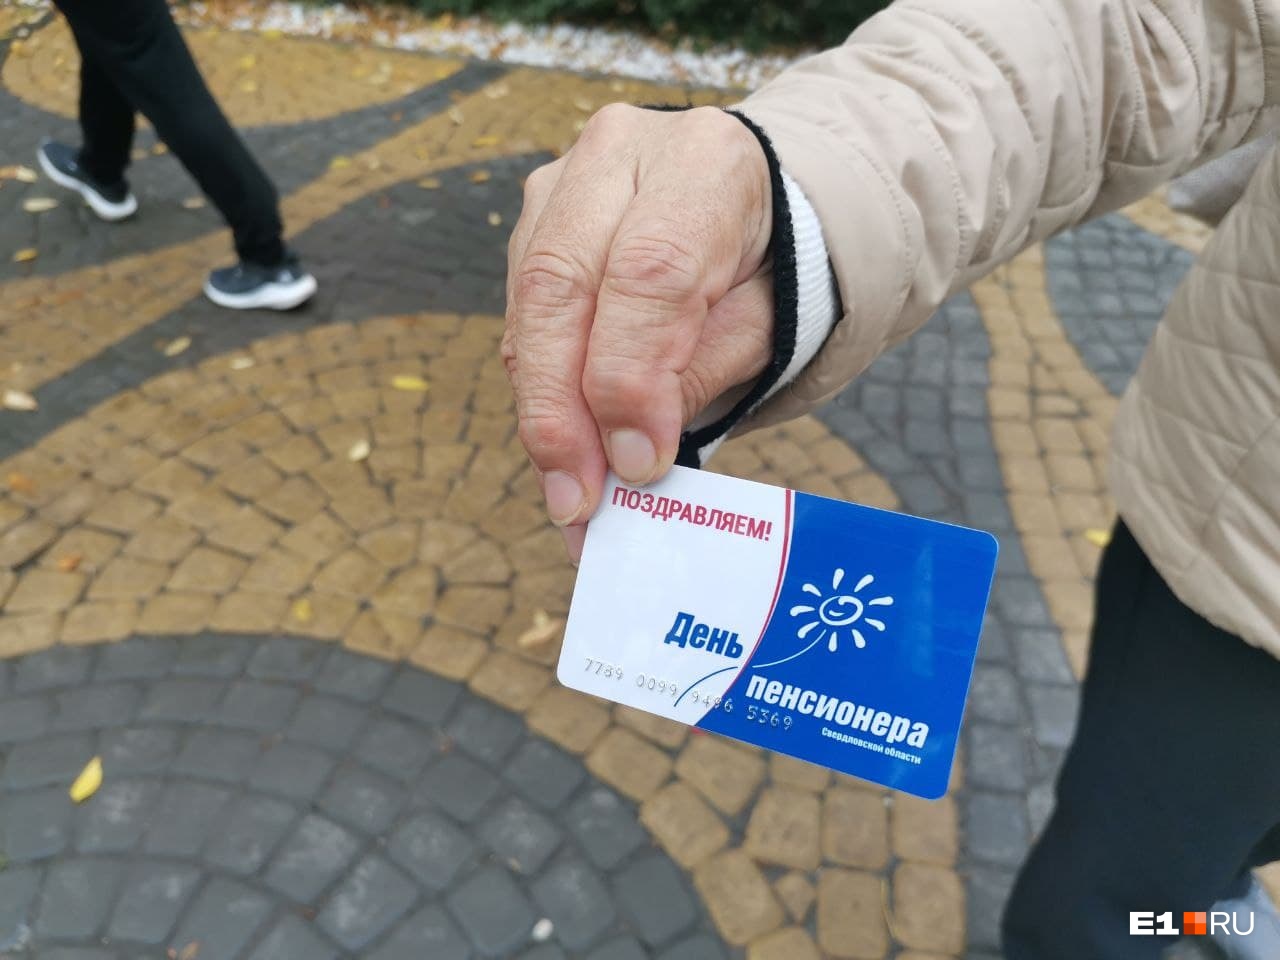 Пенсионерам в Екатеринбурге на выборах выдали карточки в «Пятерочку», но они не работают